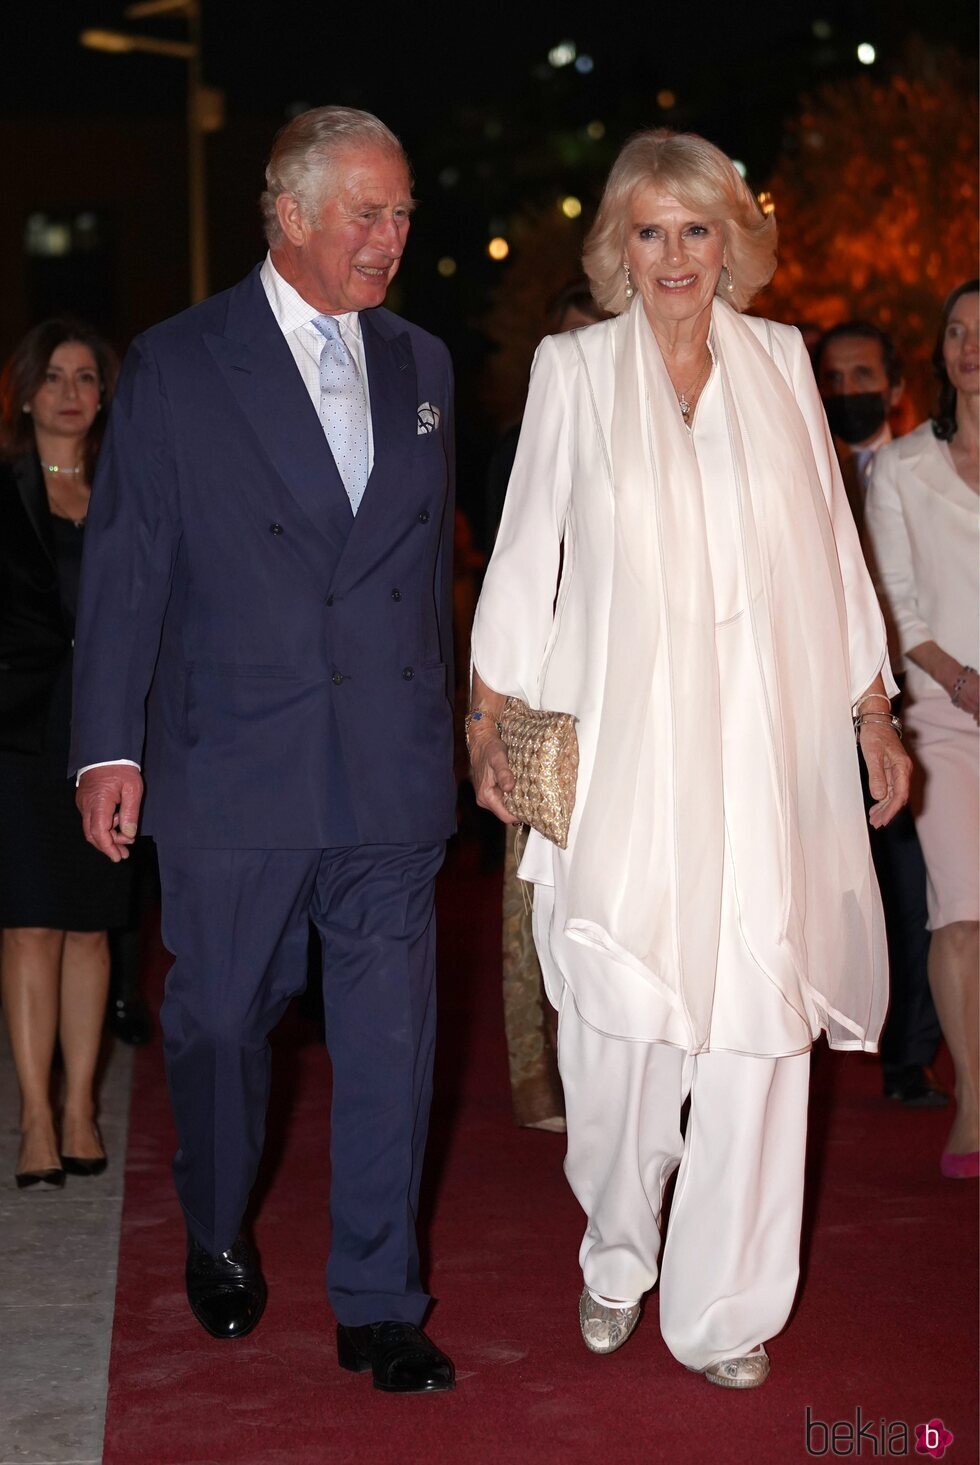 El Príncipe Carlos y Camilla Parker en el centenario del Jordan Museum de Amman en su visita oficial a Jordania